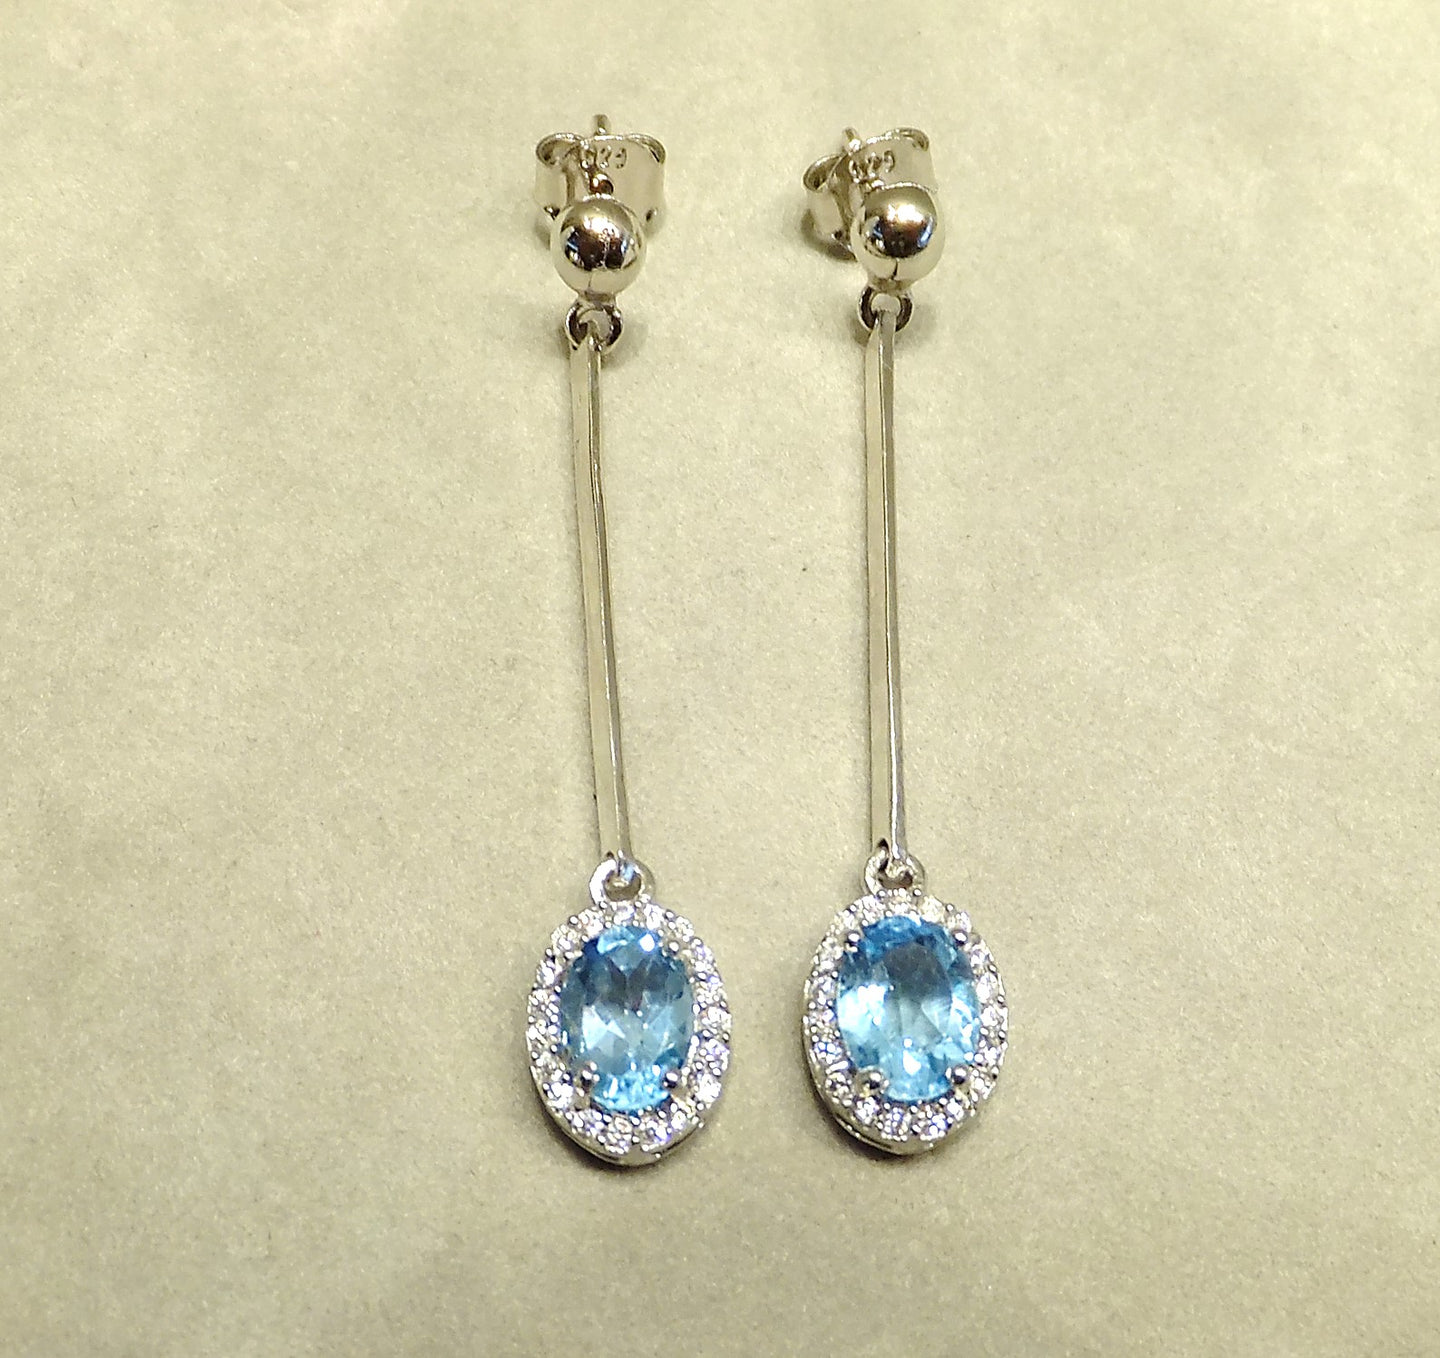 Blue topaz drop earrings in sterling silver